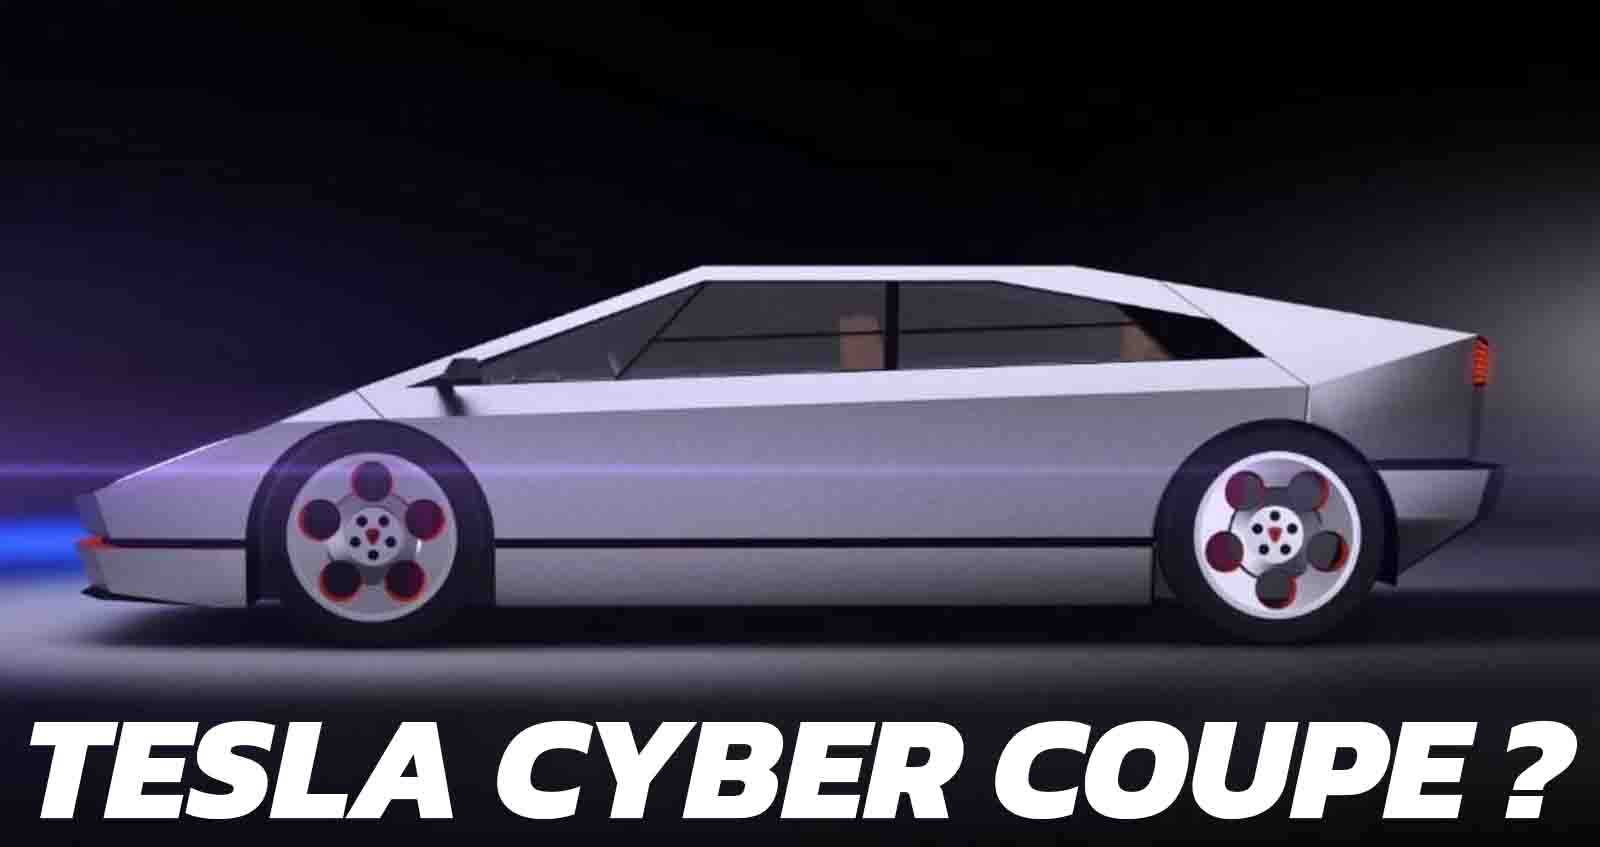 Tesla Cyber Coupe ? แรงบันดาลใจจาก Cybertruck